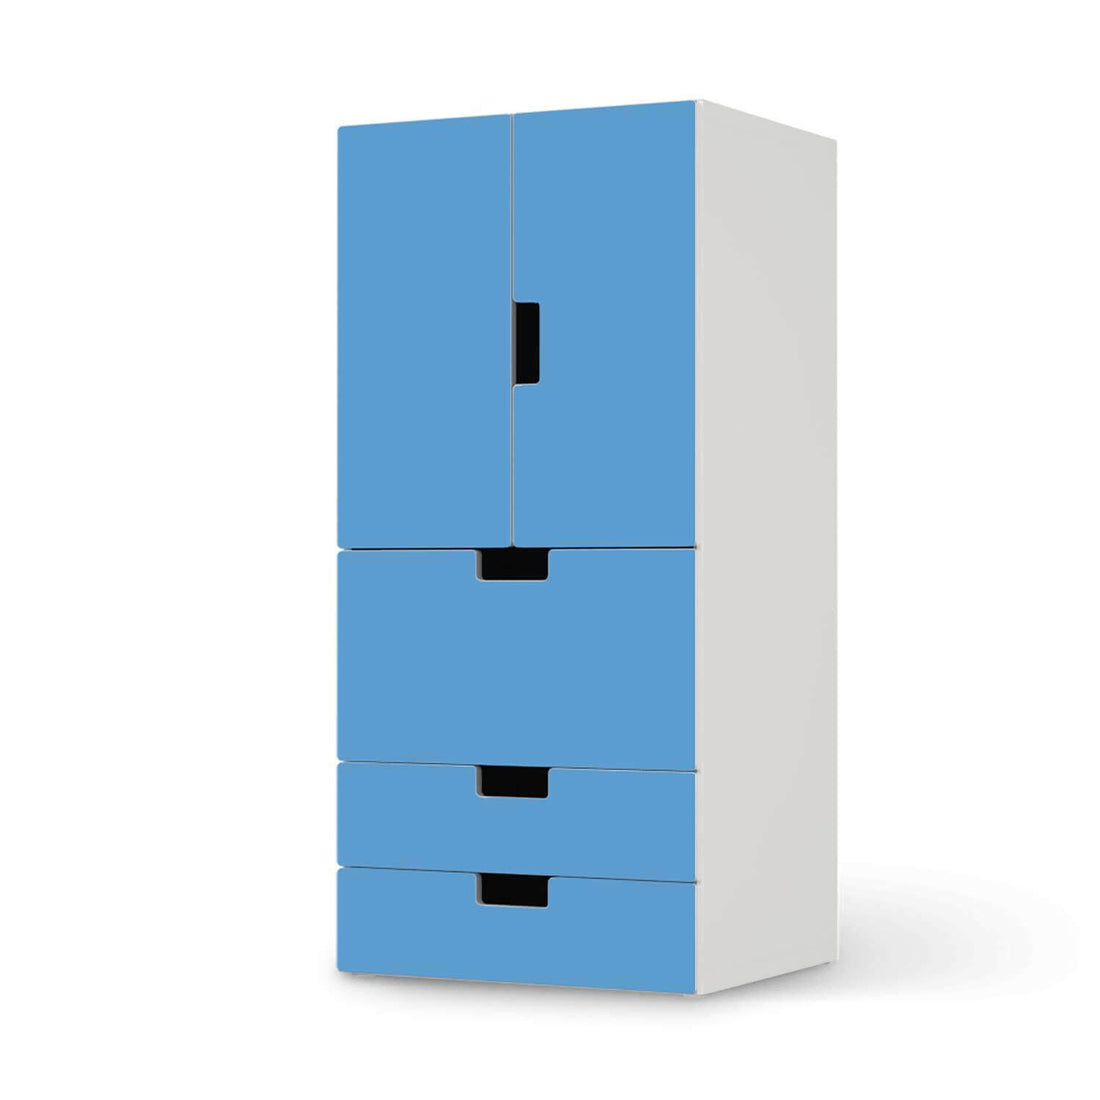 Möbelfolie Blau Light - IKEA Stuva kombiniert - 3 Schubladen und 2 kleine Türen  - weiss